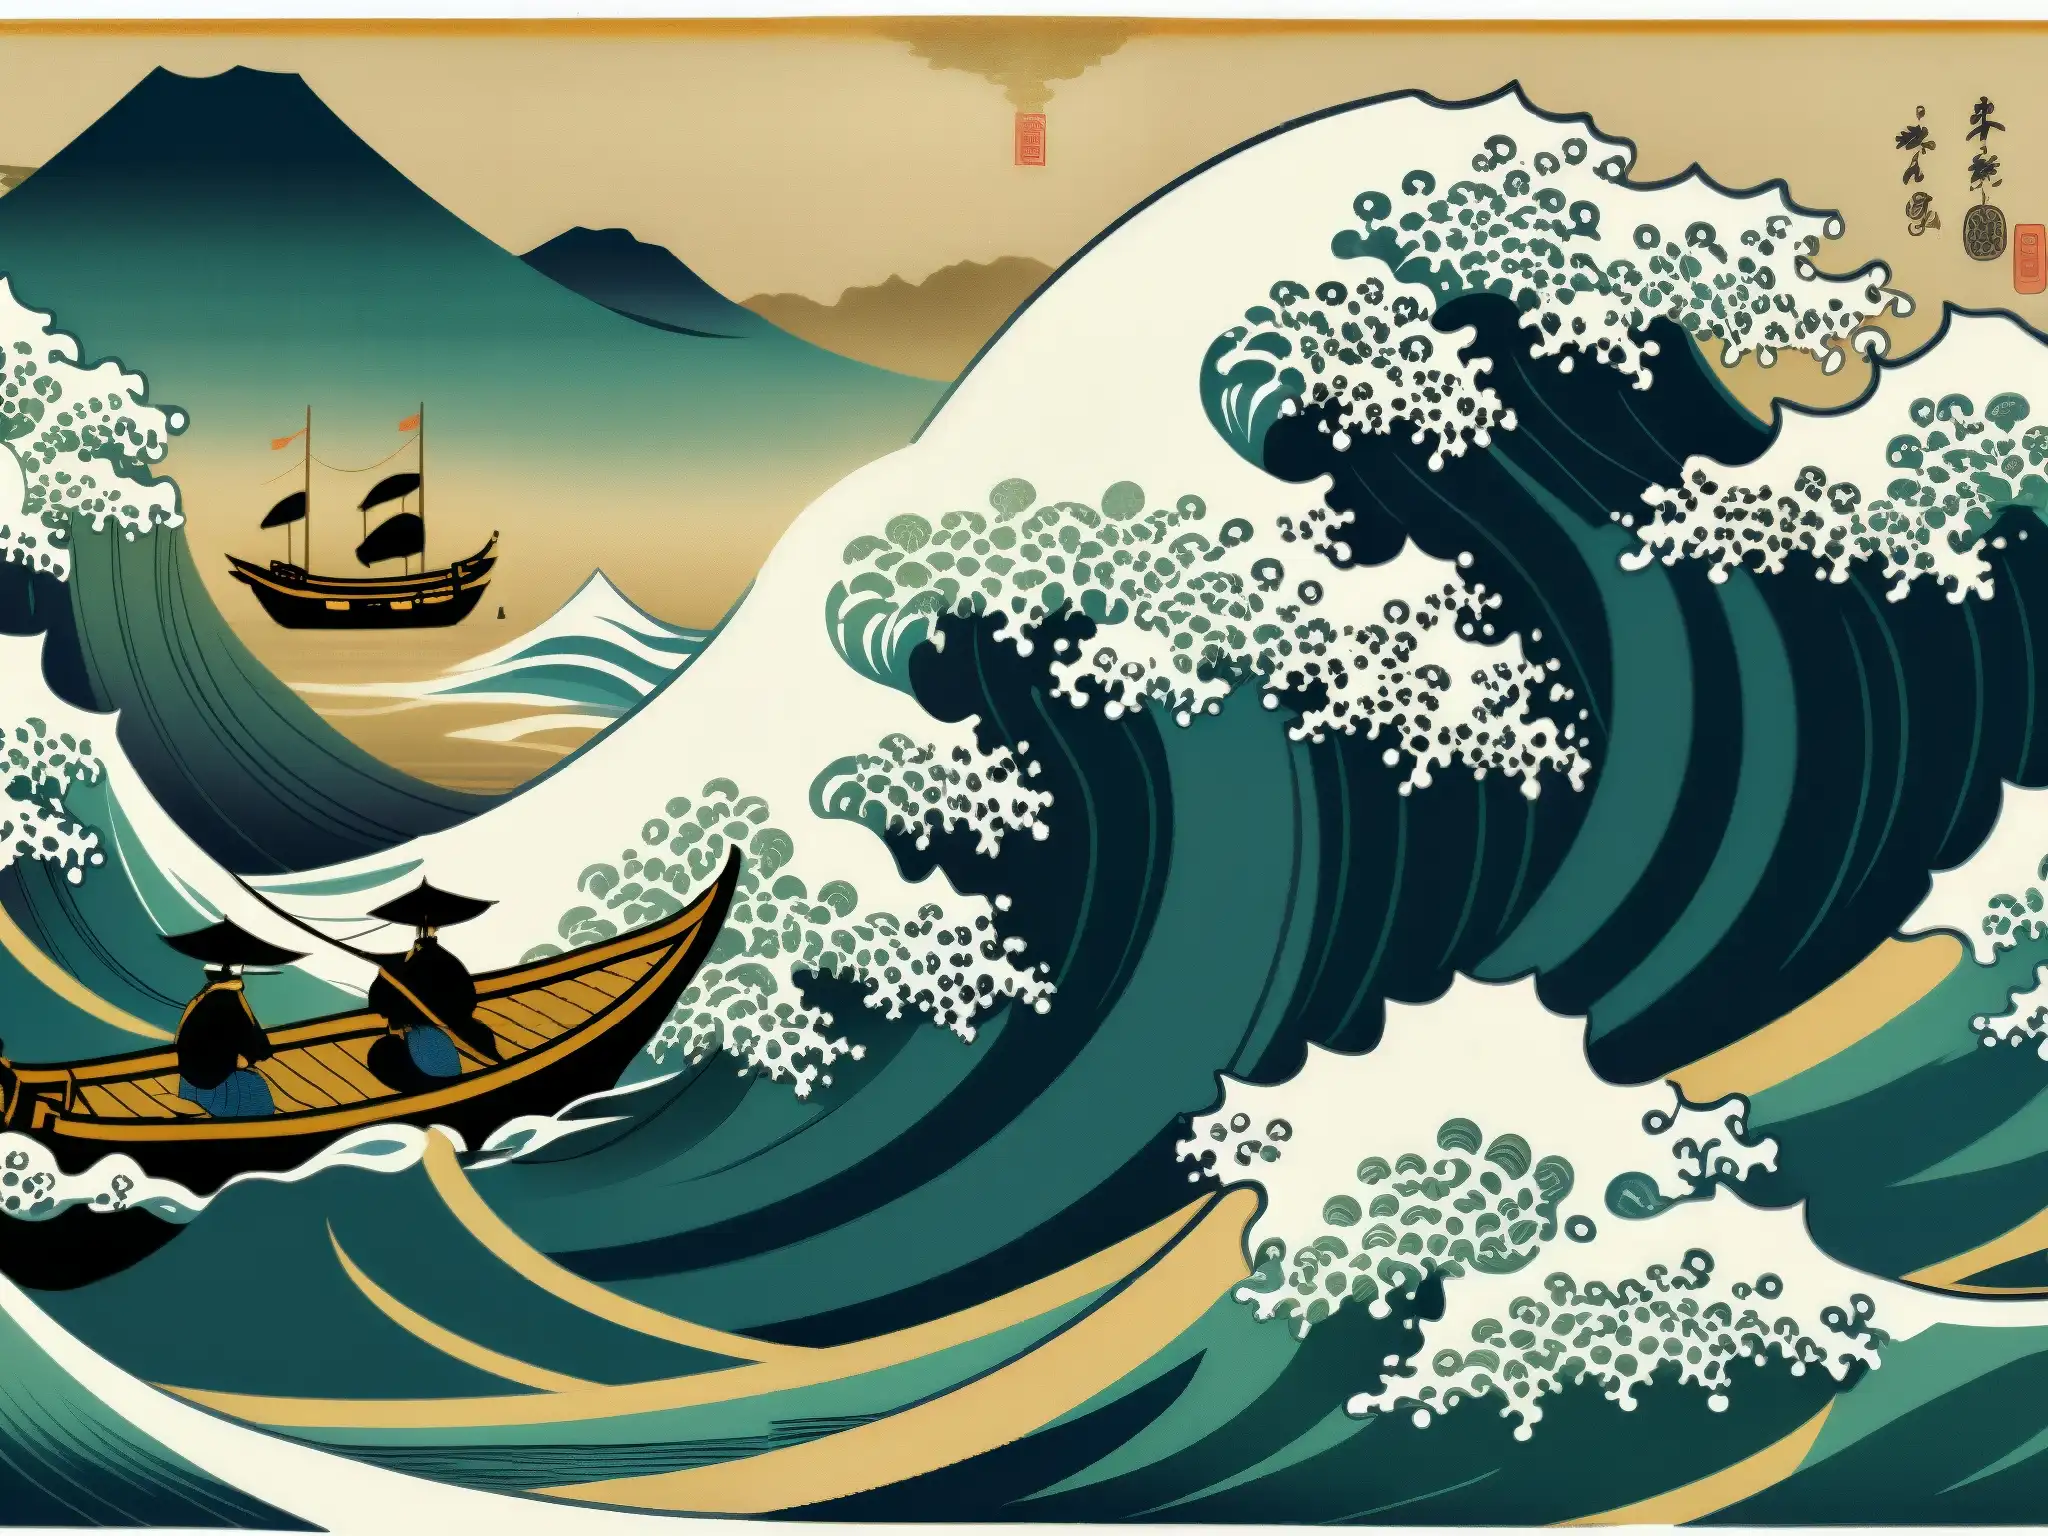 Imagen detallada de un antiguo pergamino japonés que muestra el misterioso fenómeno Utsurobune en el océano, con detalles intrincados y colores ricos